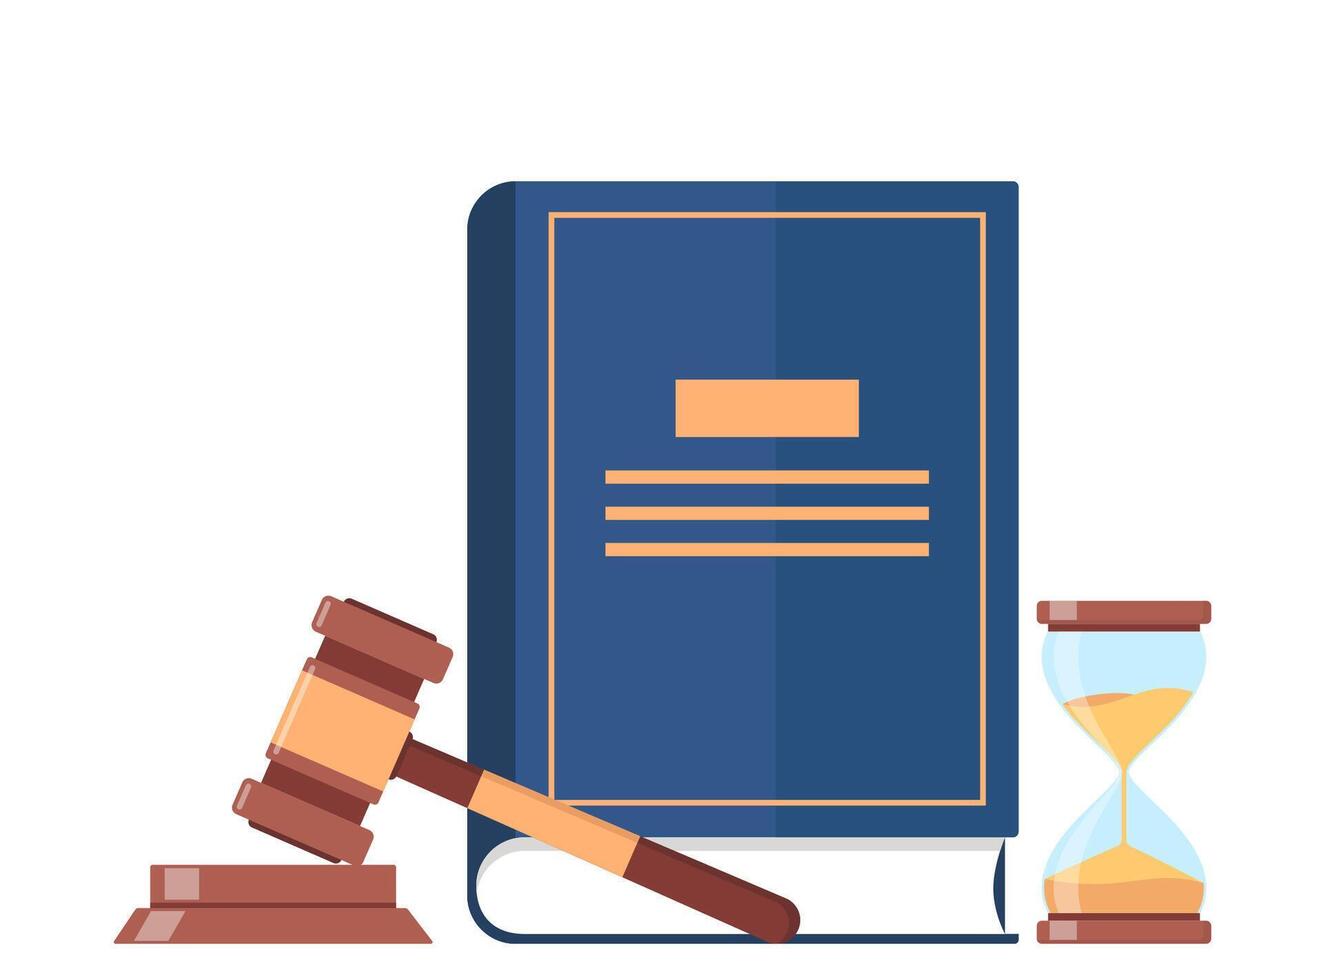 lag bok, timglas, bedöma klubba, beslut glansig klubba för domstol dom. lag och rättvisa systemet symbol. vektor illustration.